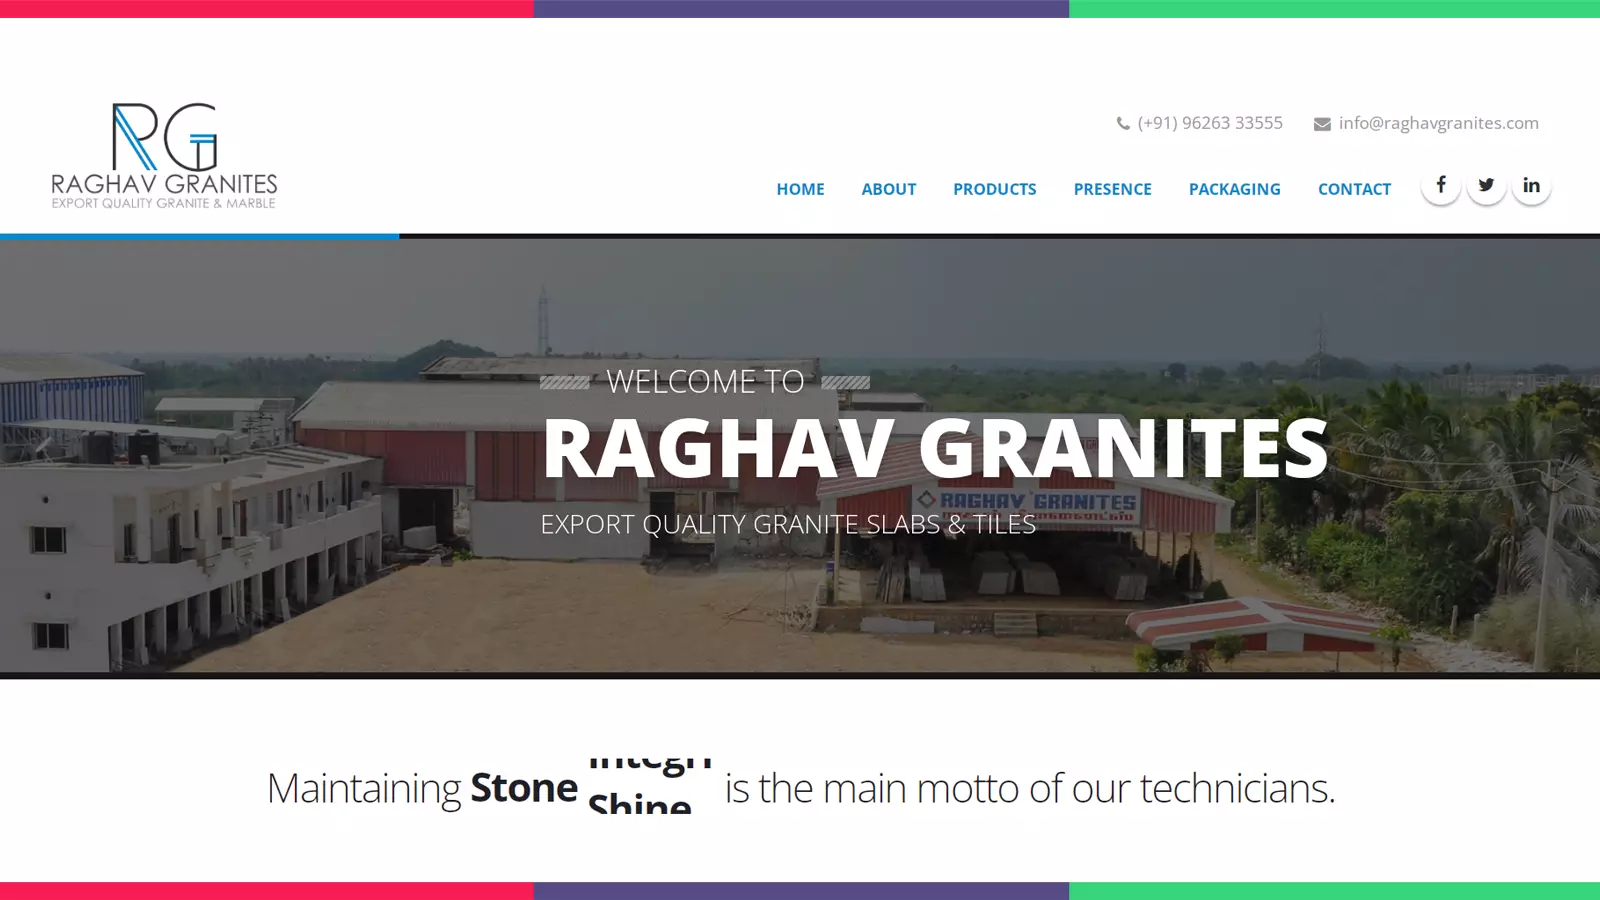 Raghav Granites